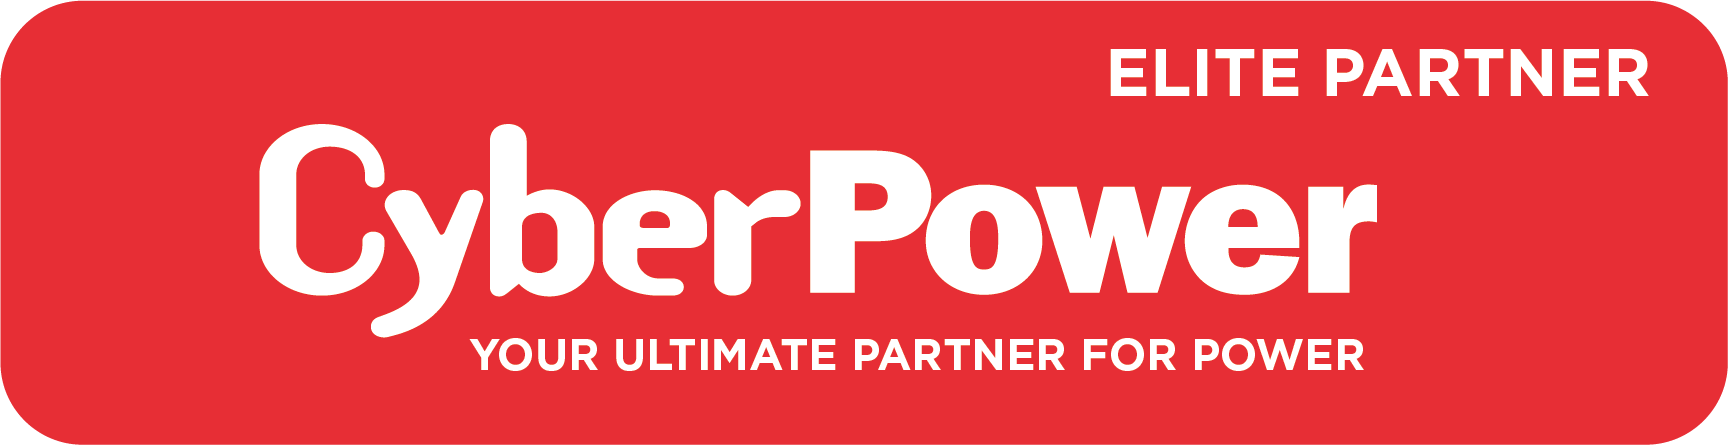 CyberPower Elite Partner Logo